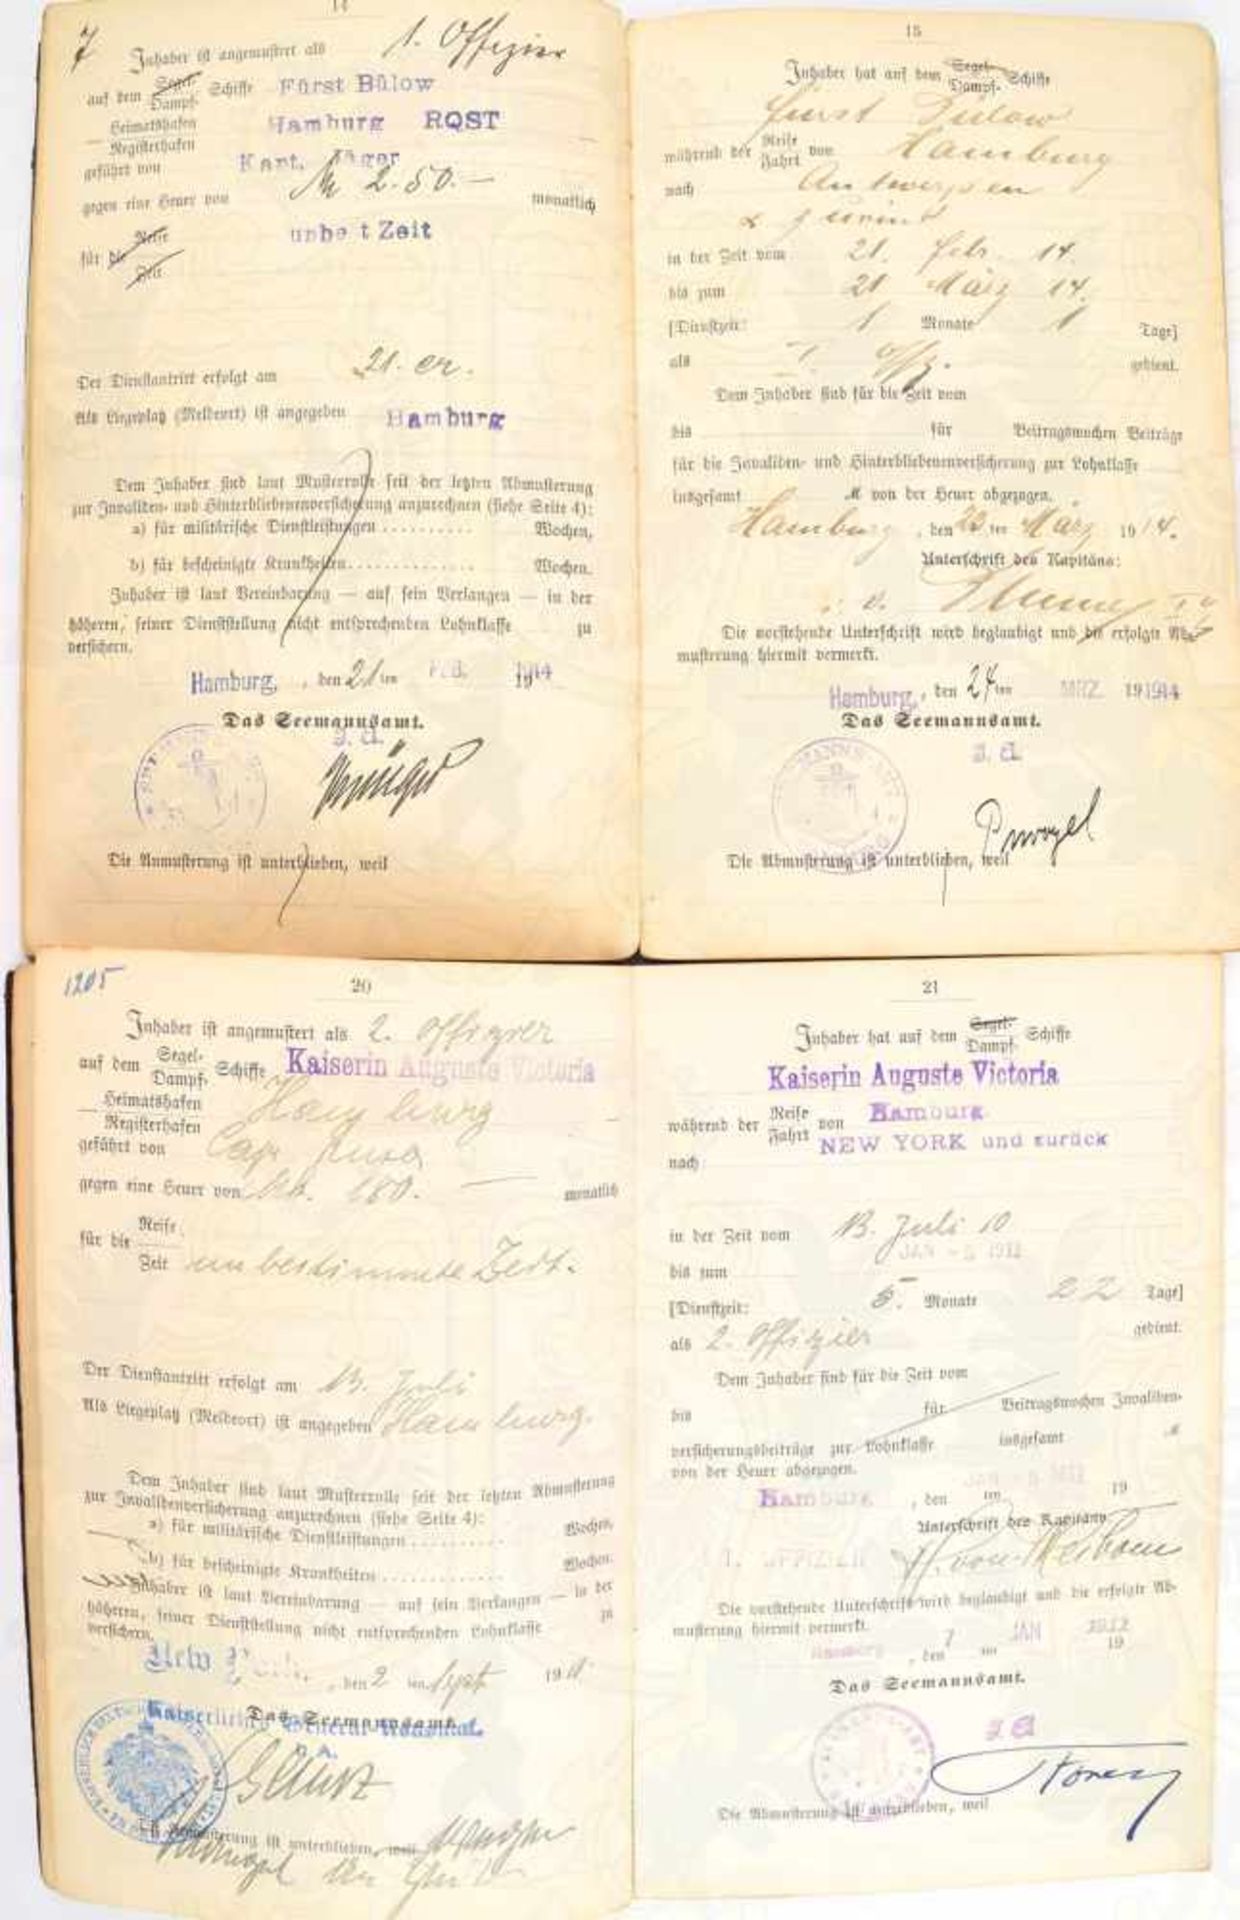 2 SEEFAHRTSBÜCHER EINES 1. OFFIZIERS, durchgehend Einträge 1908-1920 zu Fahrten auf Dampfern von